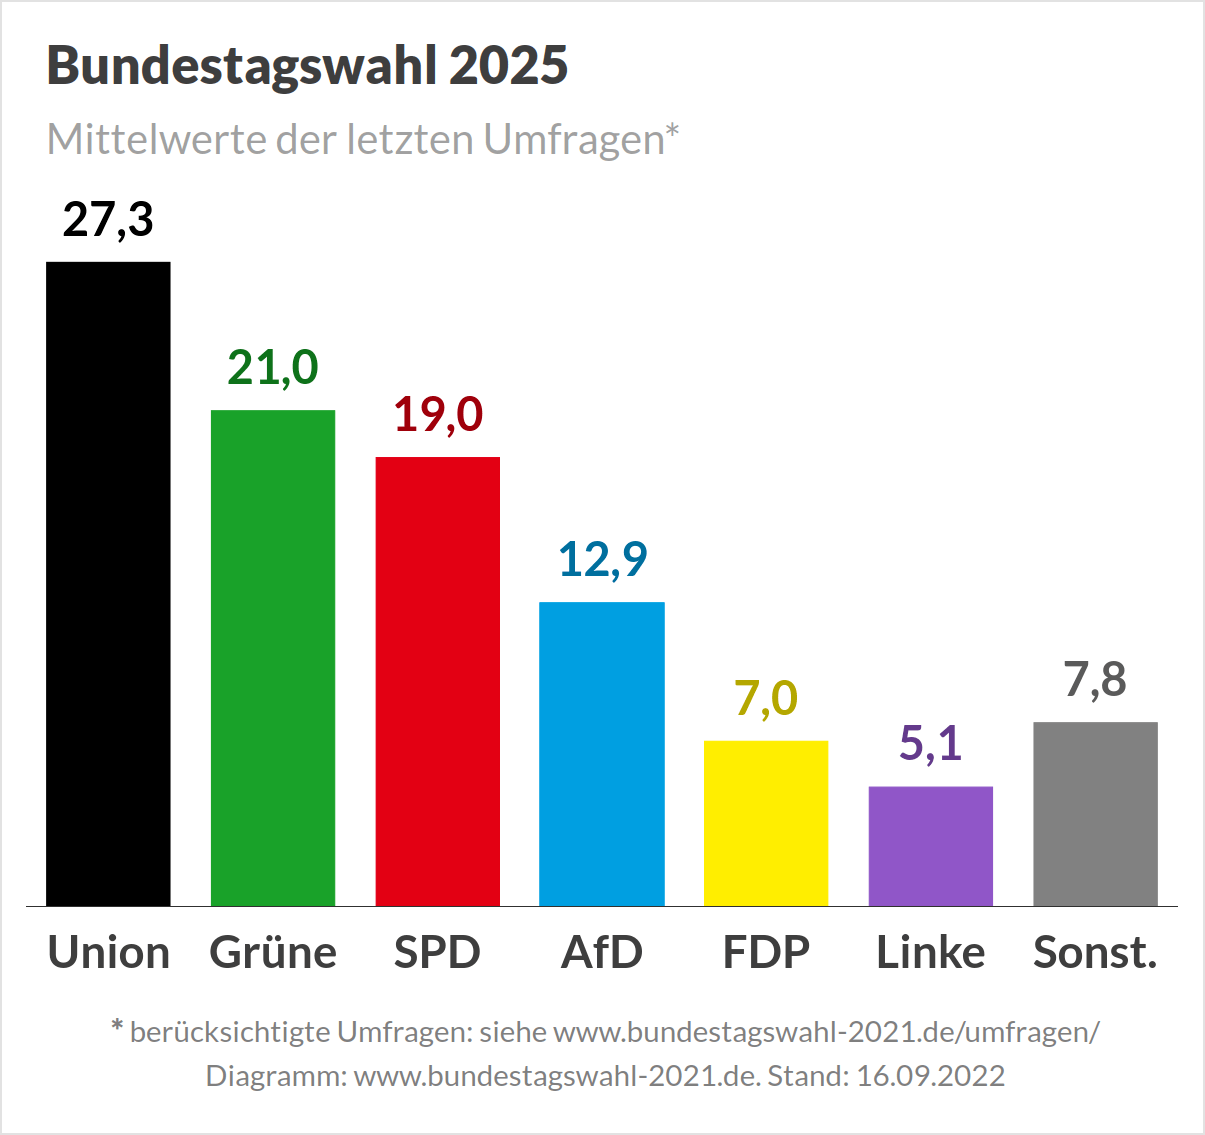 Bundestagswahl 2025